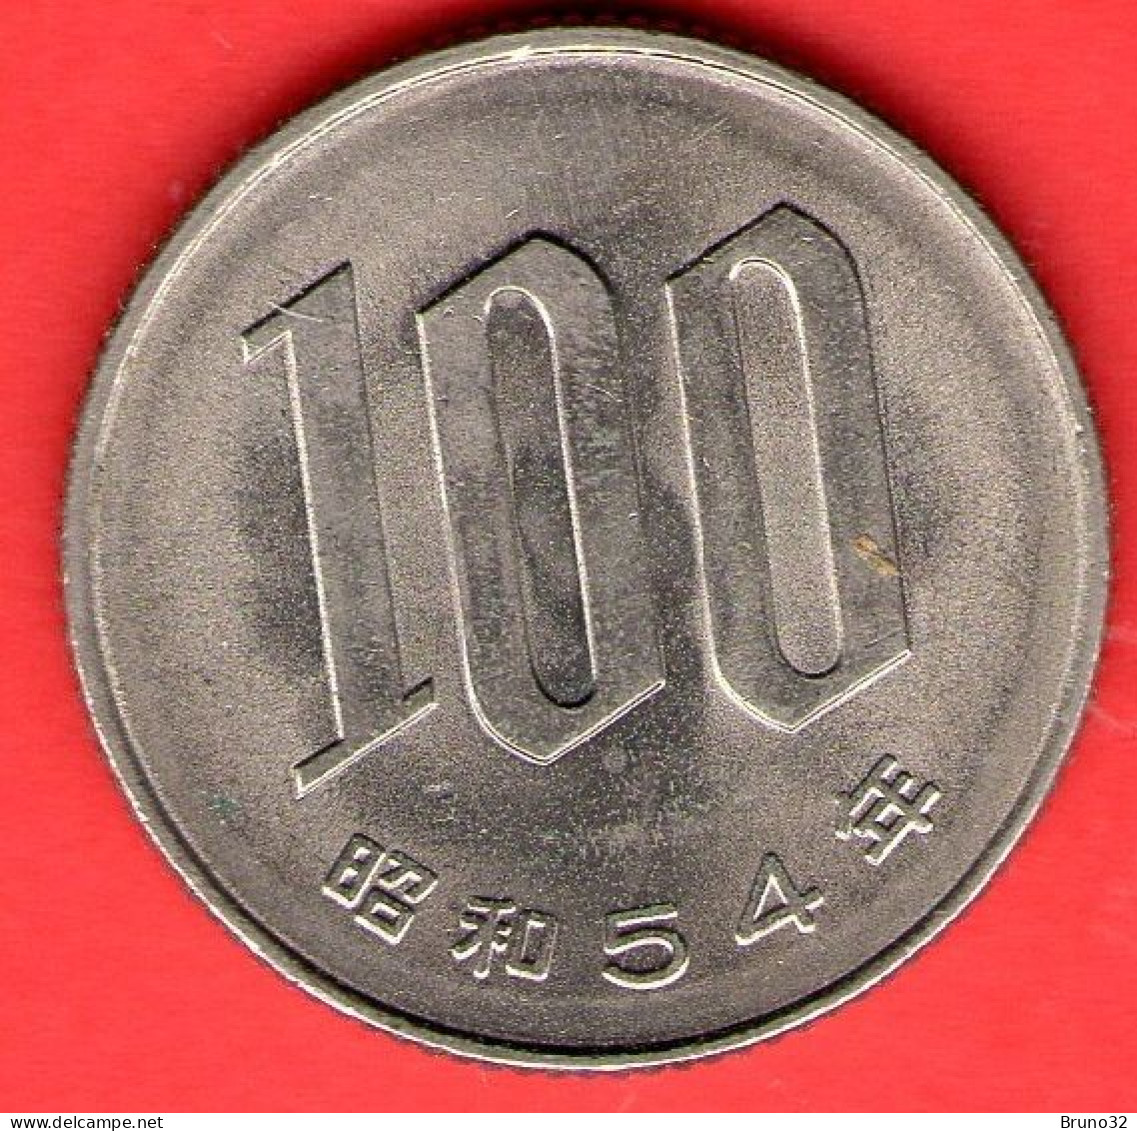 Giappone - Japan - Japon - 100 Yen (54) - QFDC/aUNC - Come Da Foto - Japon